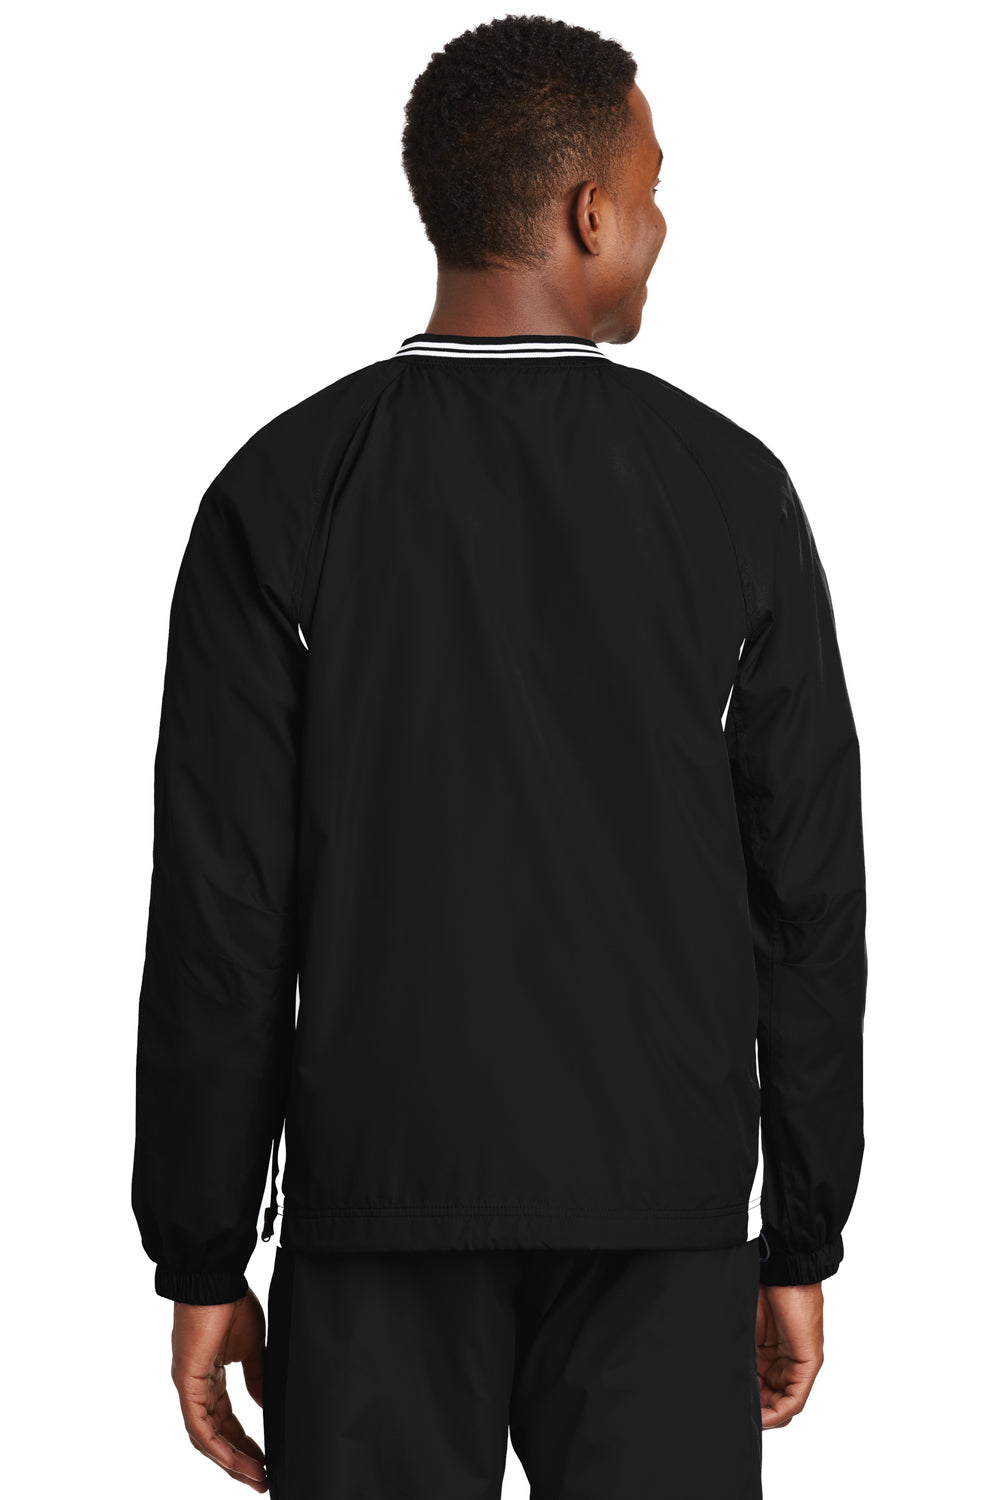 Sport-Tek JST62 Mens Wind & Water Resistant V-Neck Jacket Black/White Back